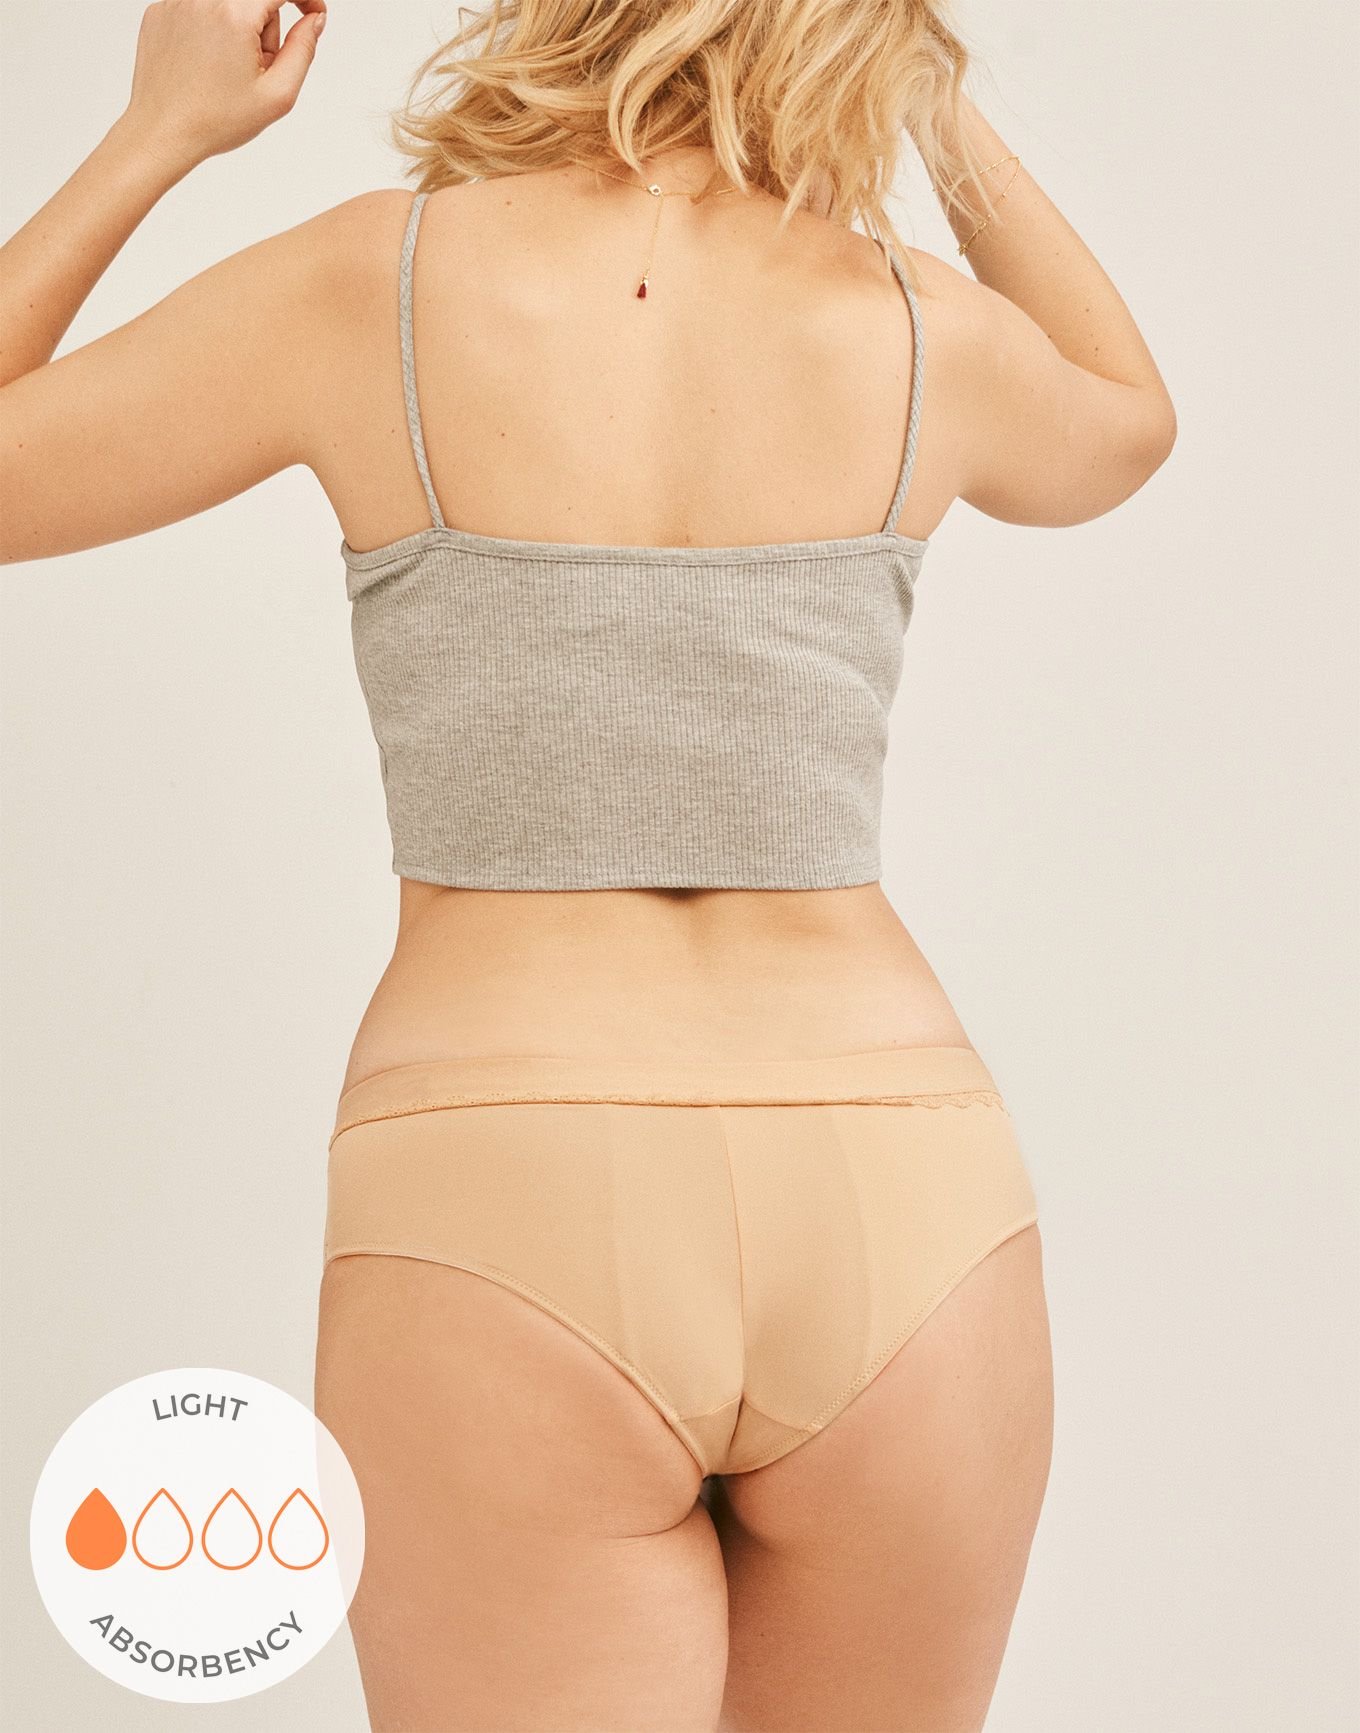 Cheeky Chic: High-End Underwear XS-4X